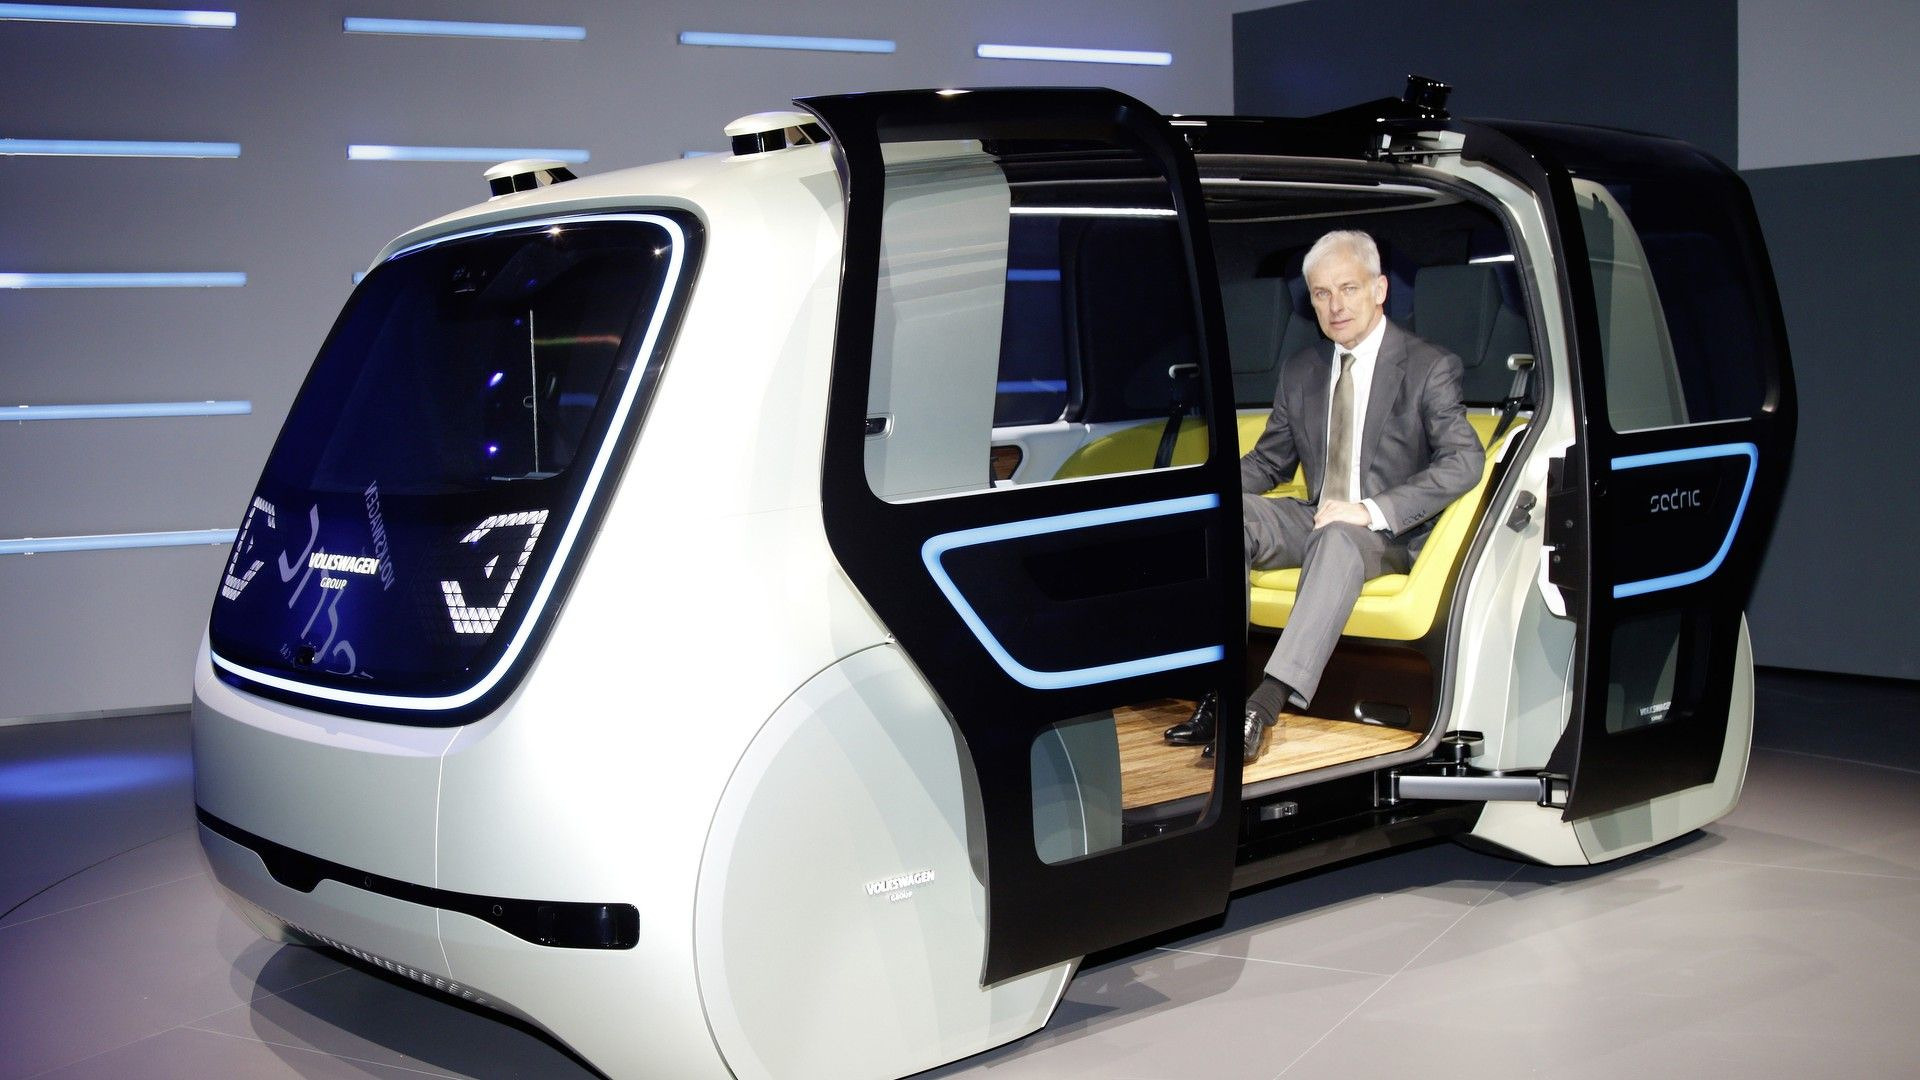 Πλήρως αυτόνομα οχήματα έως το 2021 υπόσχεται ο όμιλος VW